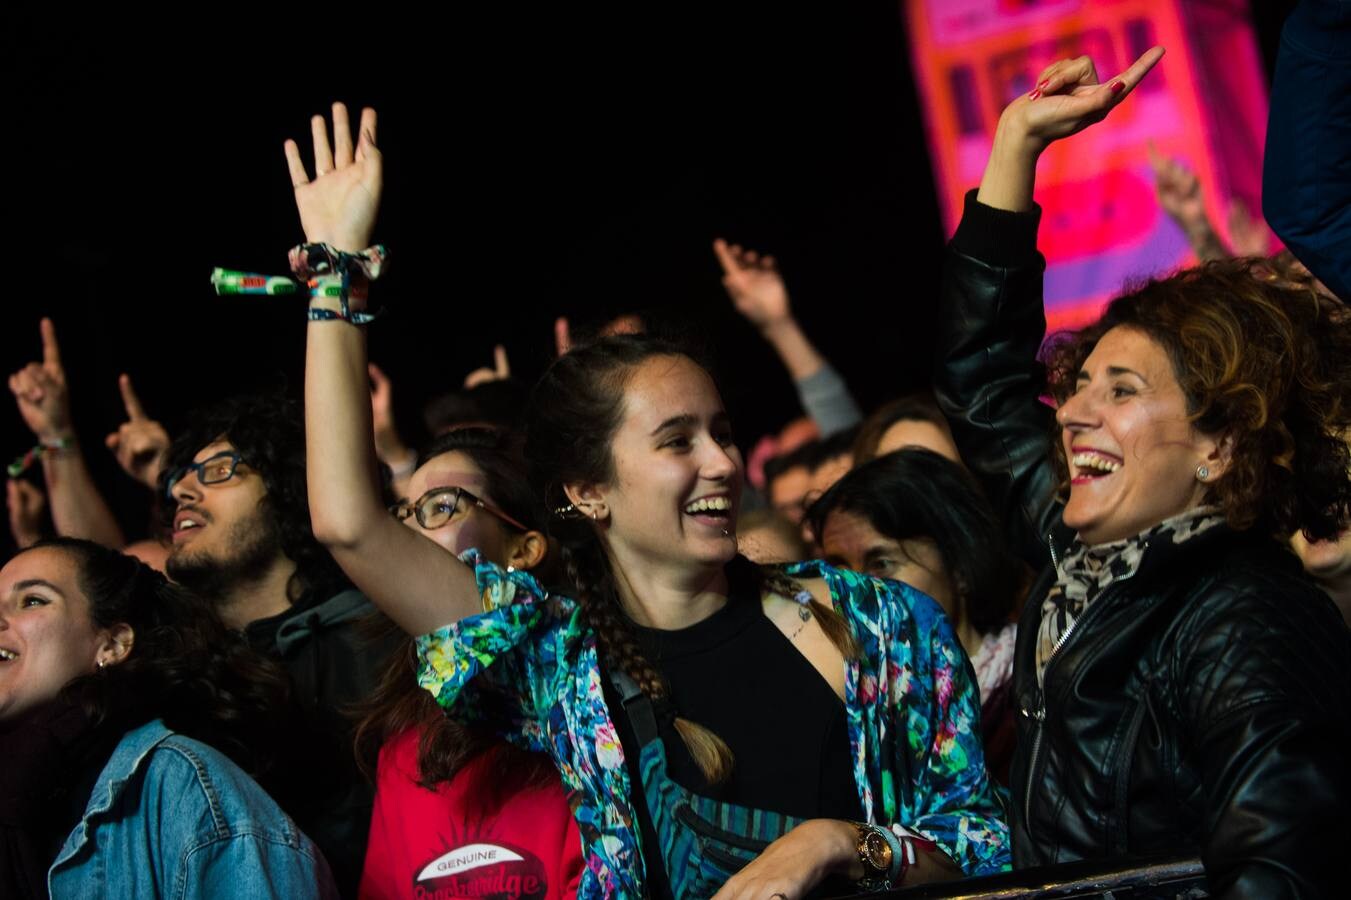 La banda murciana ofrece uno de los conciertos más populosos y coreados.